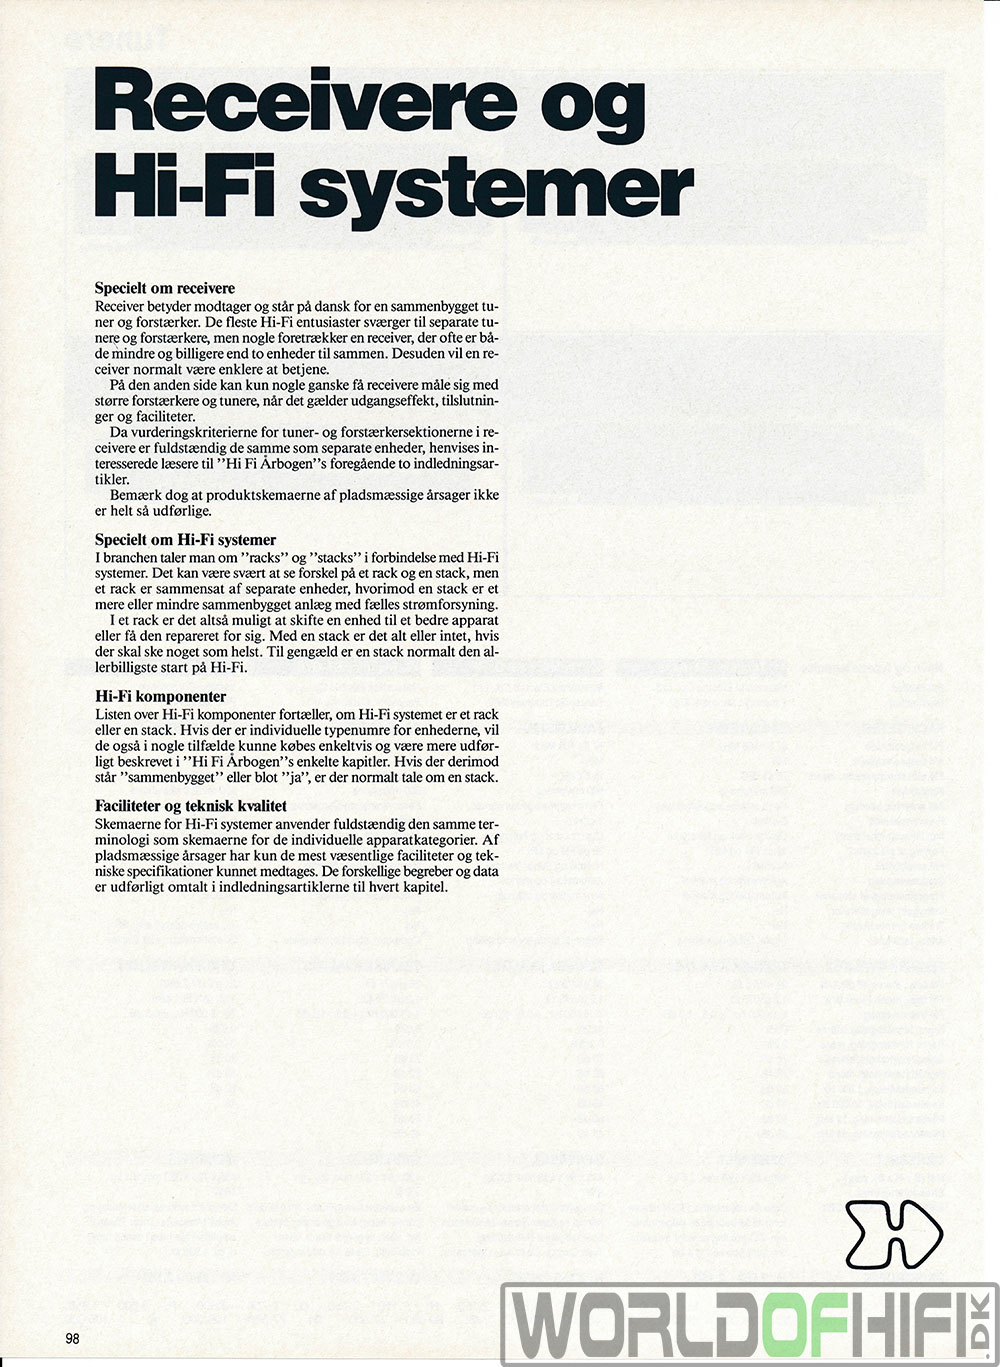 Hi-Fi Årbogen, 92, 98, Receivere, , 